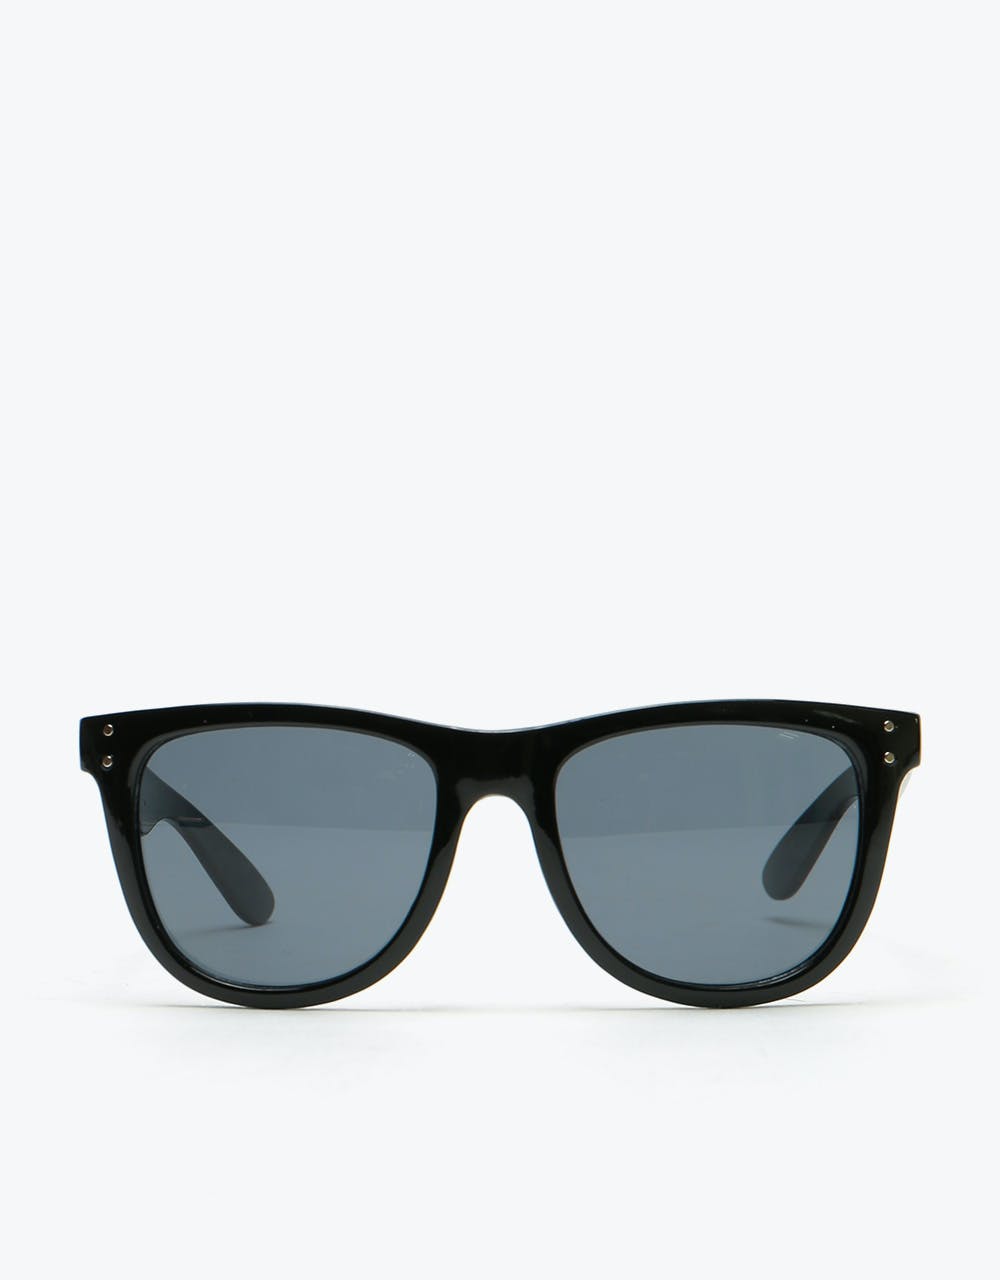 Independent Manner Sunglasses - Black